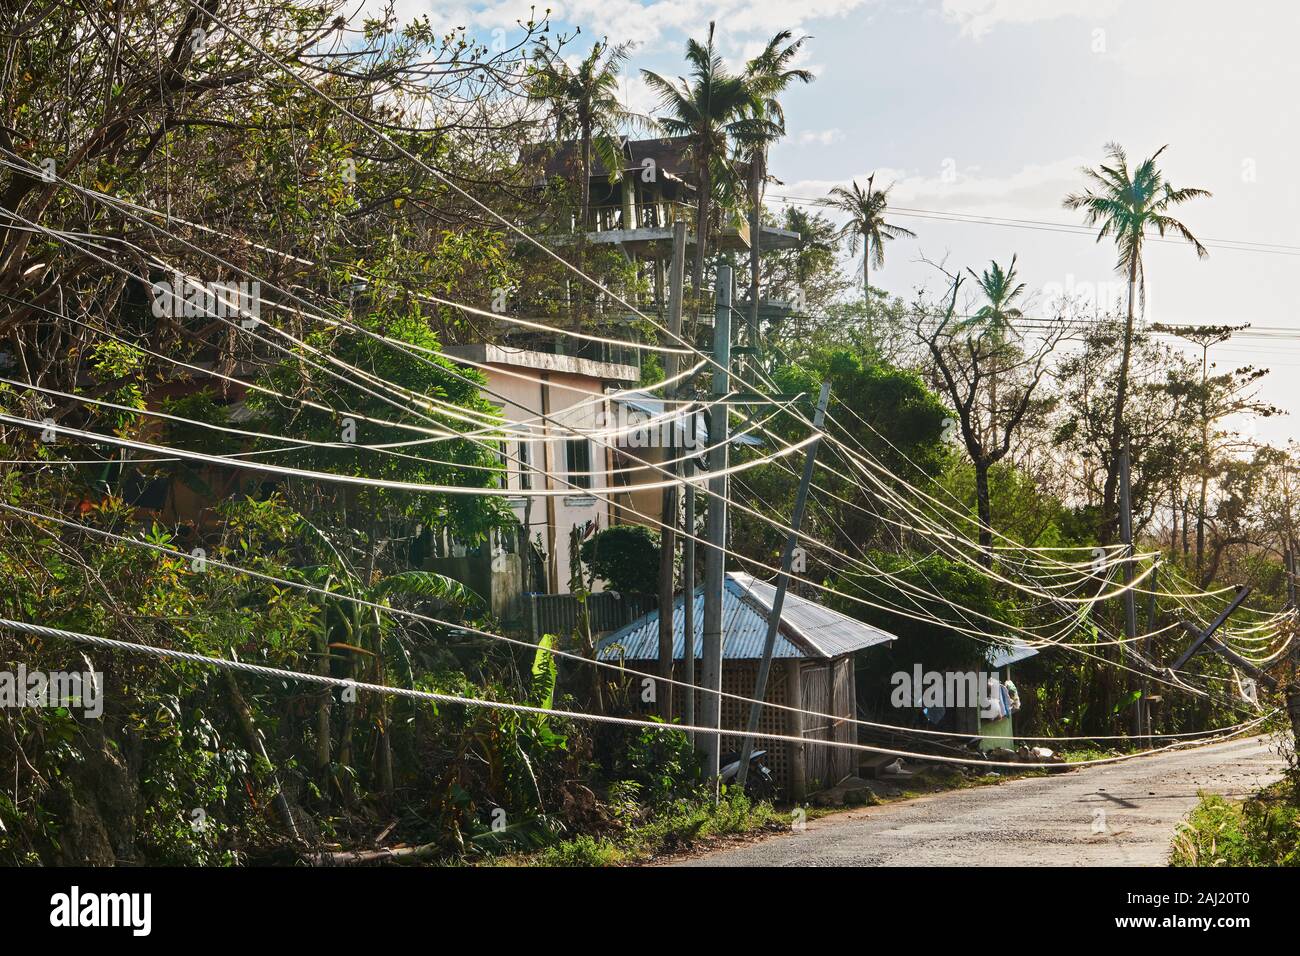 Isla de Boracay, provincia de Aklan, Filipinas: El tifón Ursula causado árboles caídos, rotura de líneas eléctricas, daños estructurales en Boracay Foto de stock